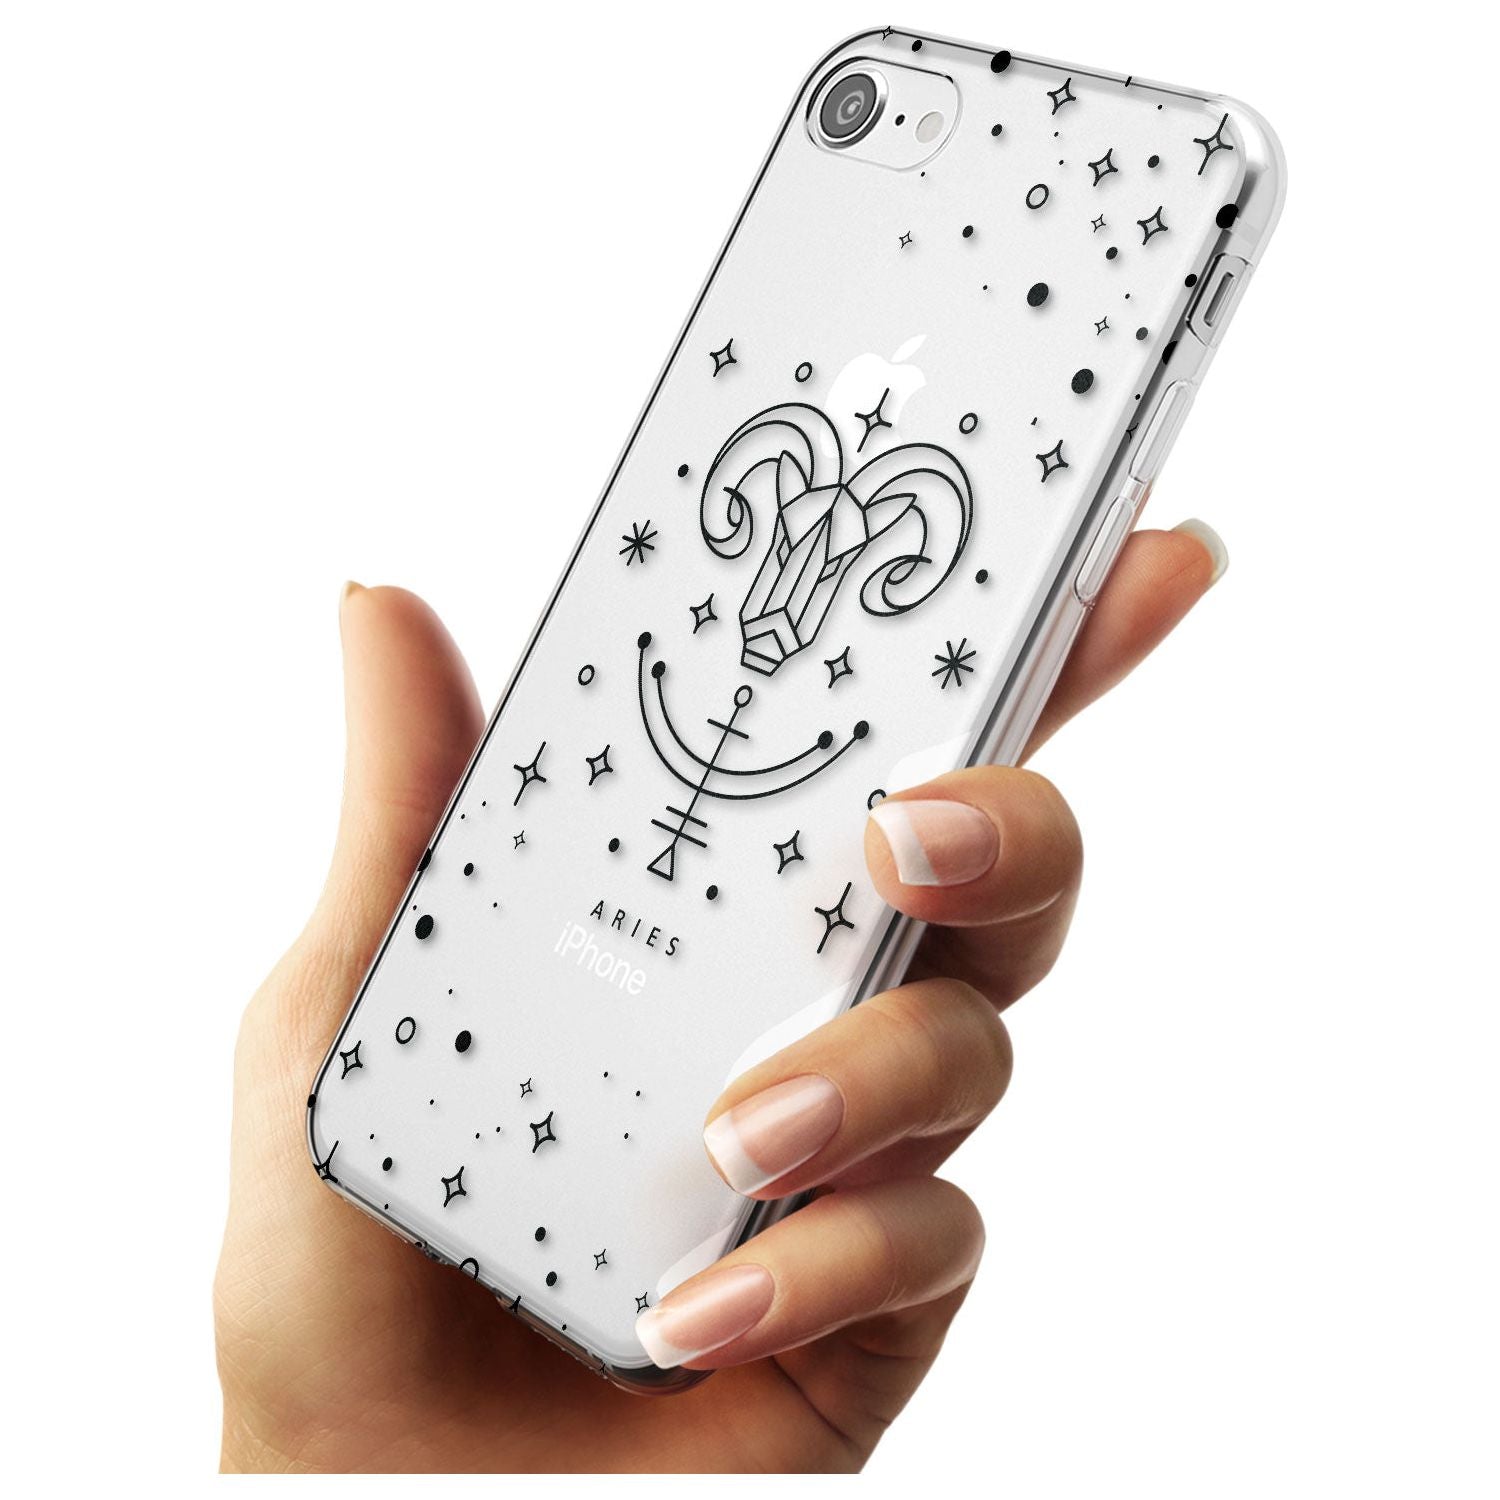 Aries Emblem - Transparent Design Slim TPU Phone Case for iPhone SE 8 7 Plus